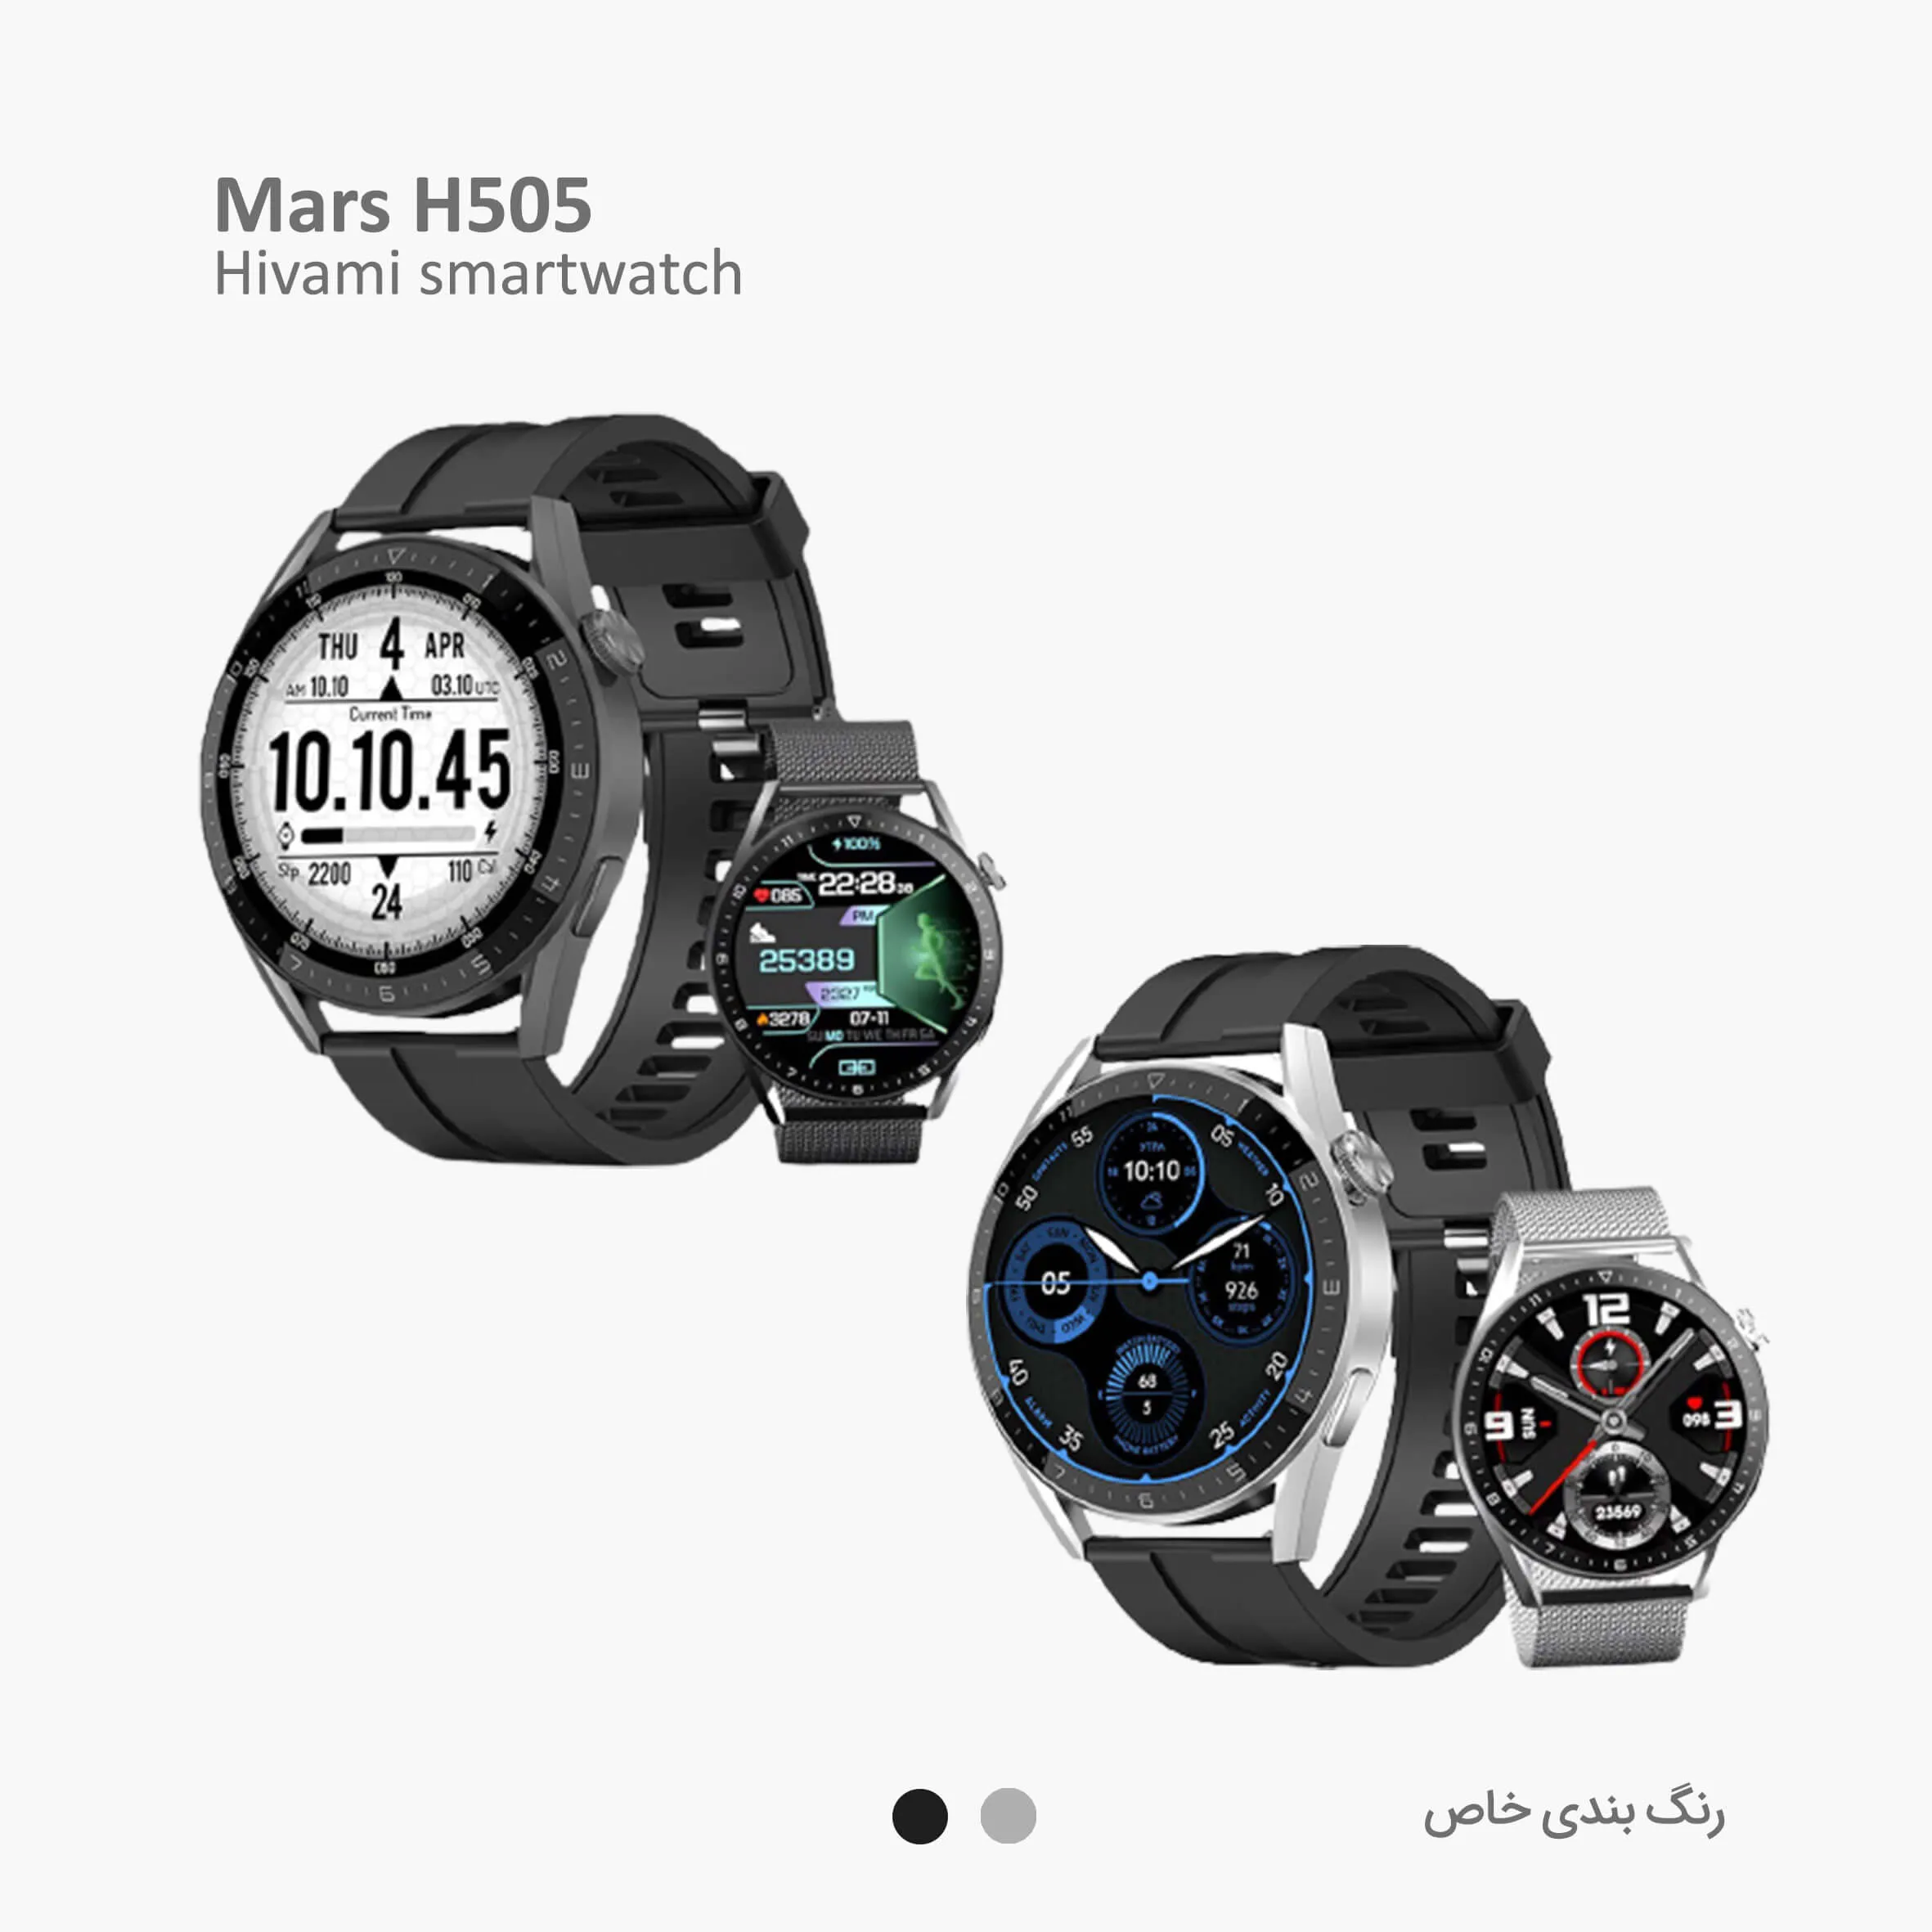 mars-h505-details-20